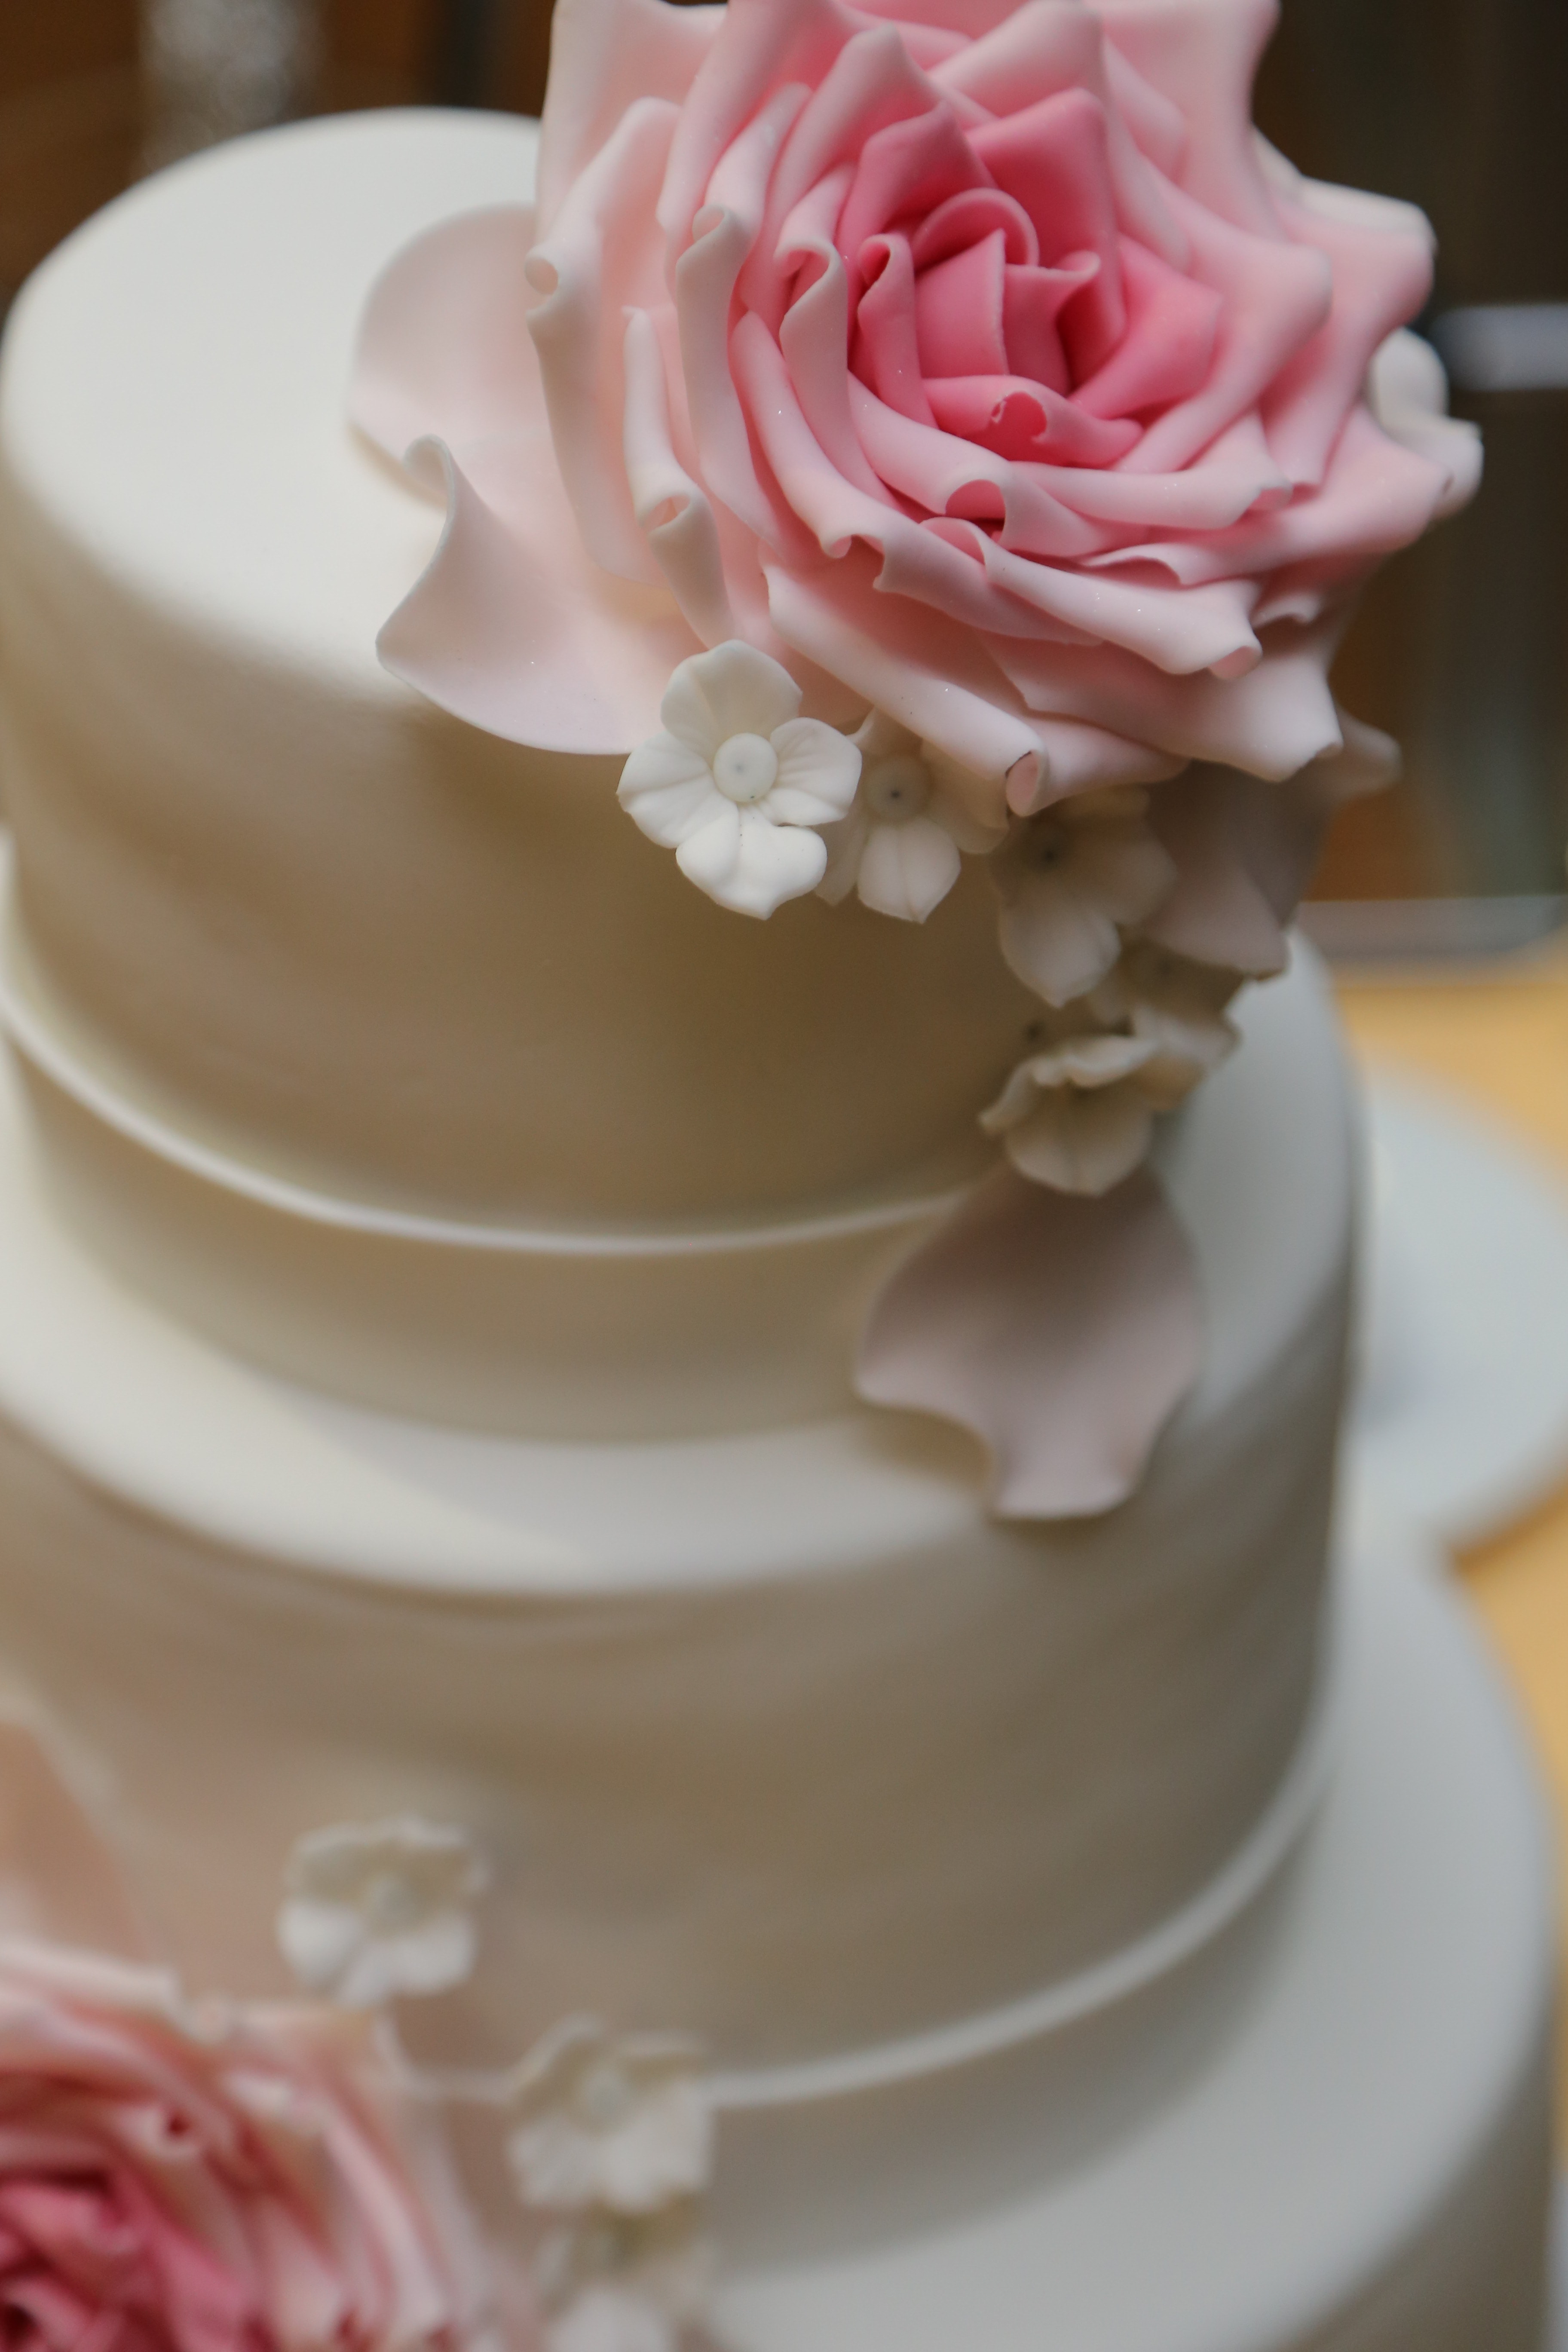 Kostenlose Bild: Kuchen, Hochzeitstorte, romantische, elegant, Romantik ...